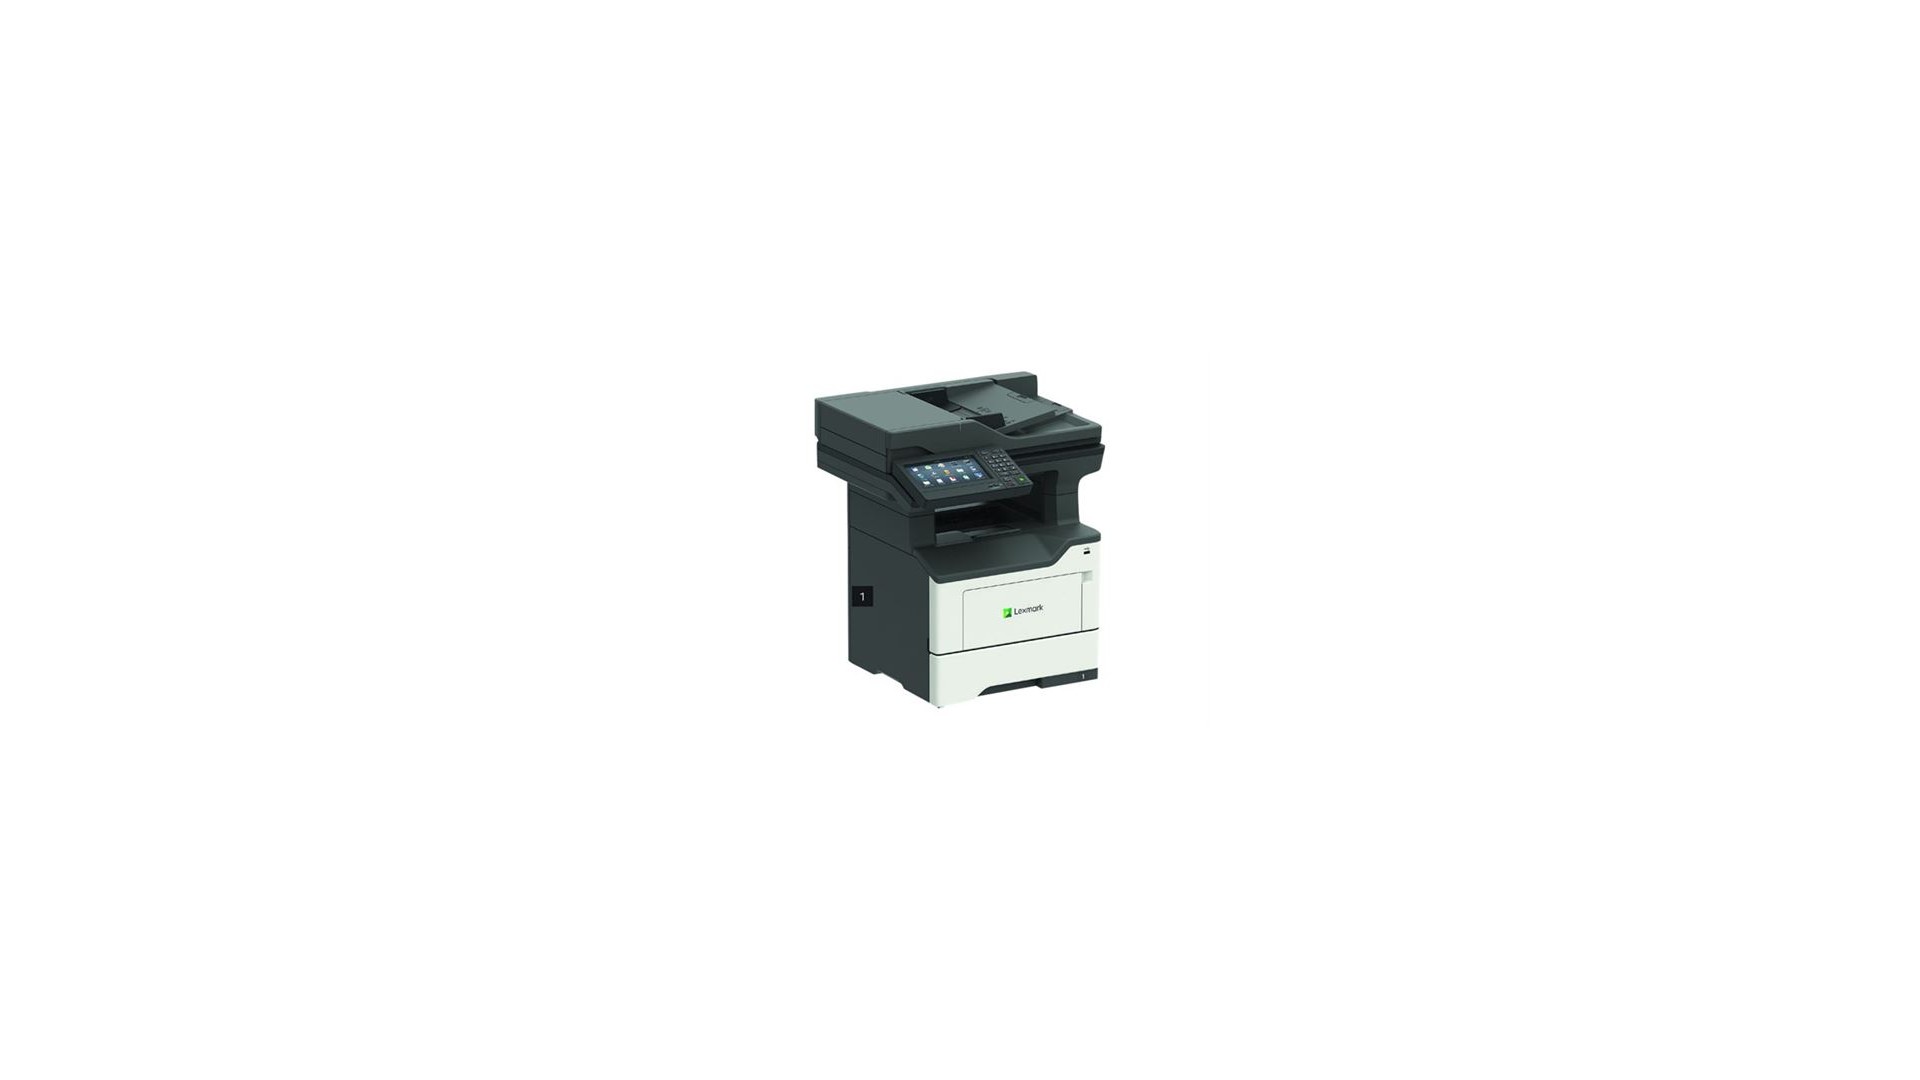 XM3250 - Imprimante multifonctions - Noir et blanc